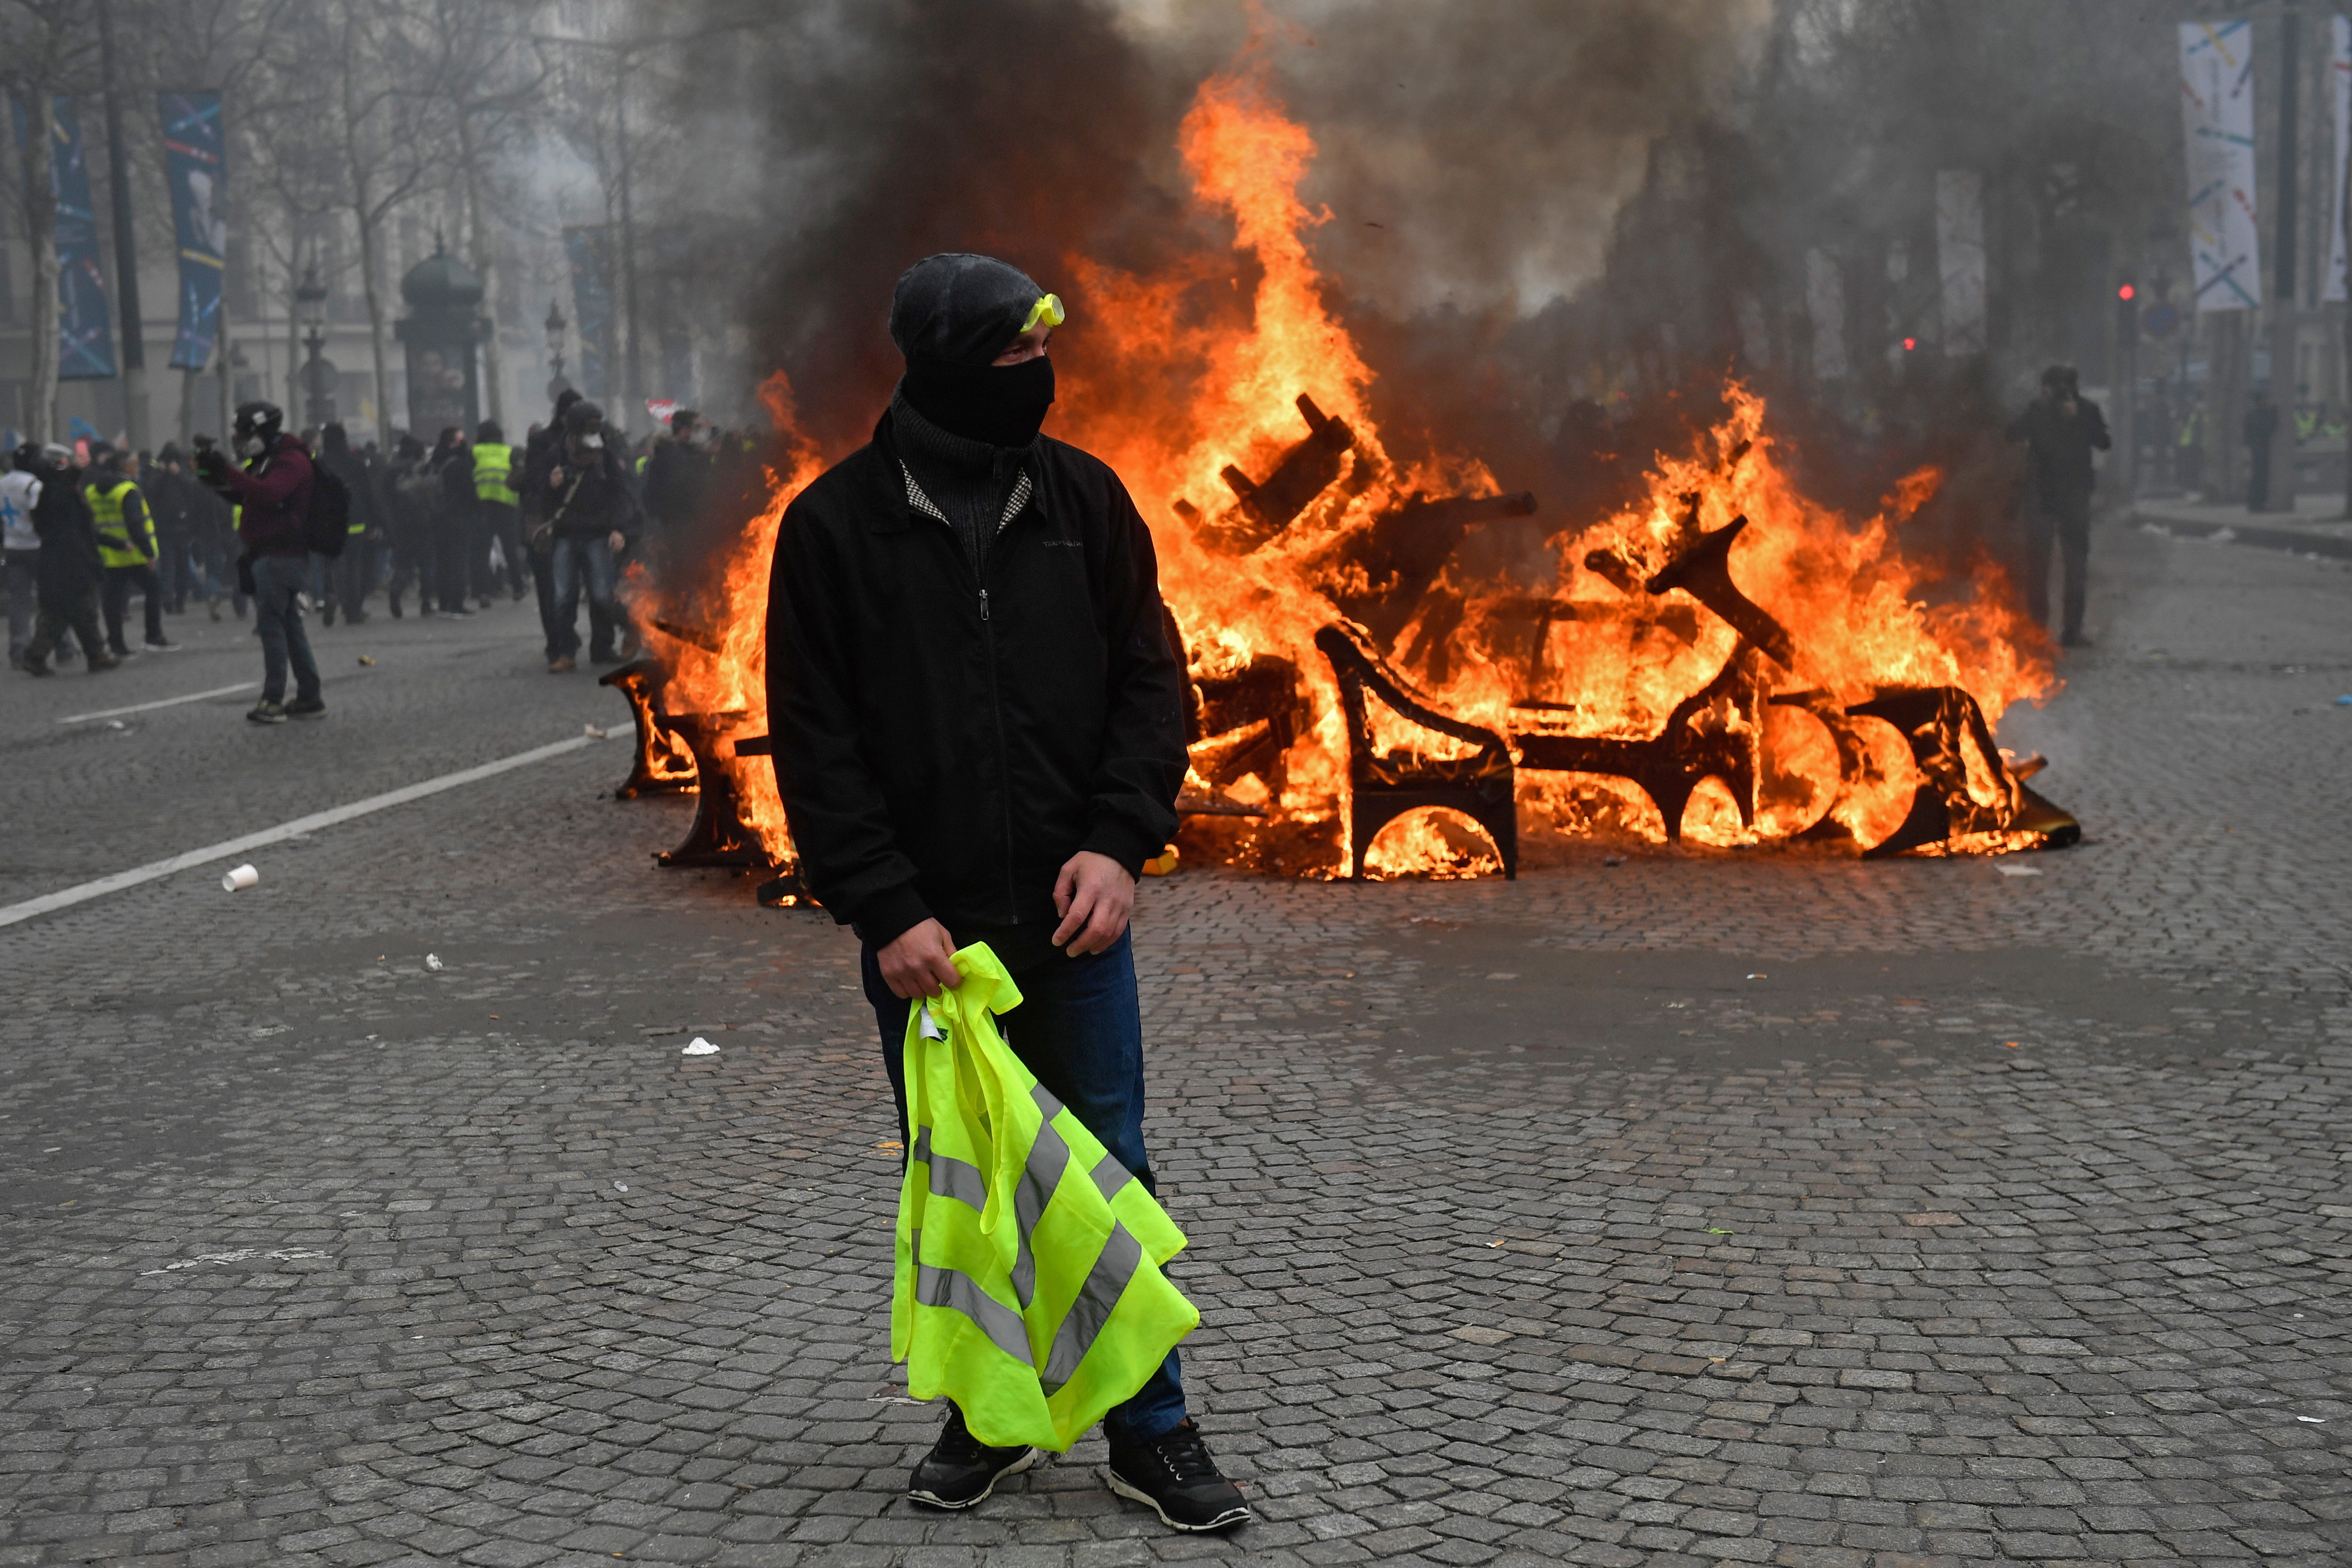 Francja: "żółte kamizelki" wznieciły pożar, z trudem uratowano matkę z  dzieckiem - Wiadomości